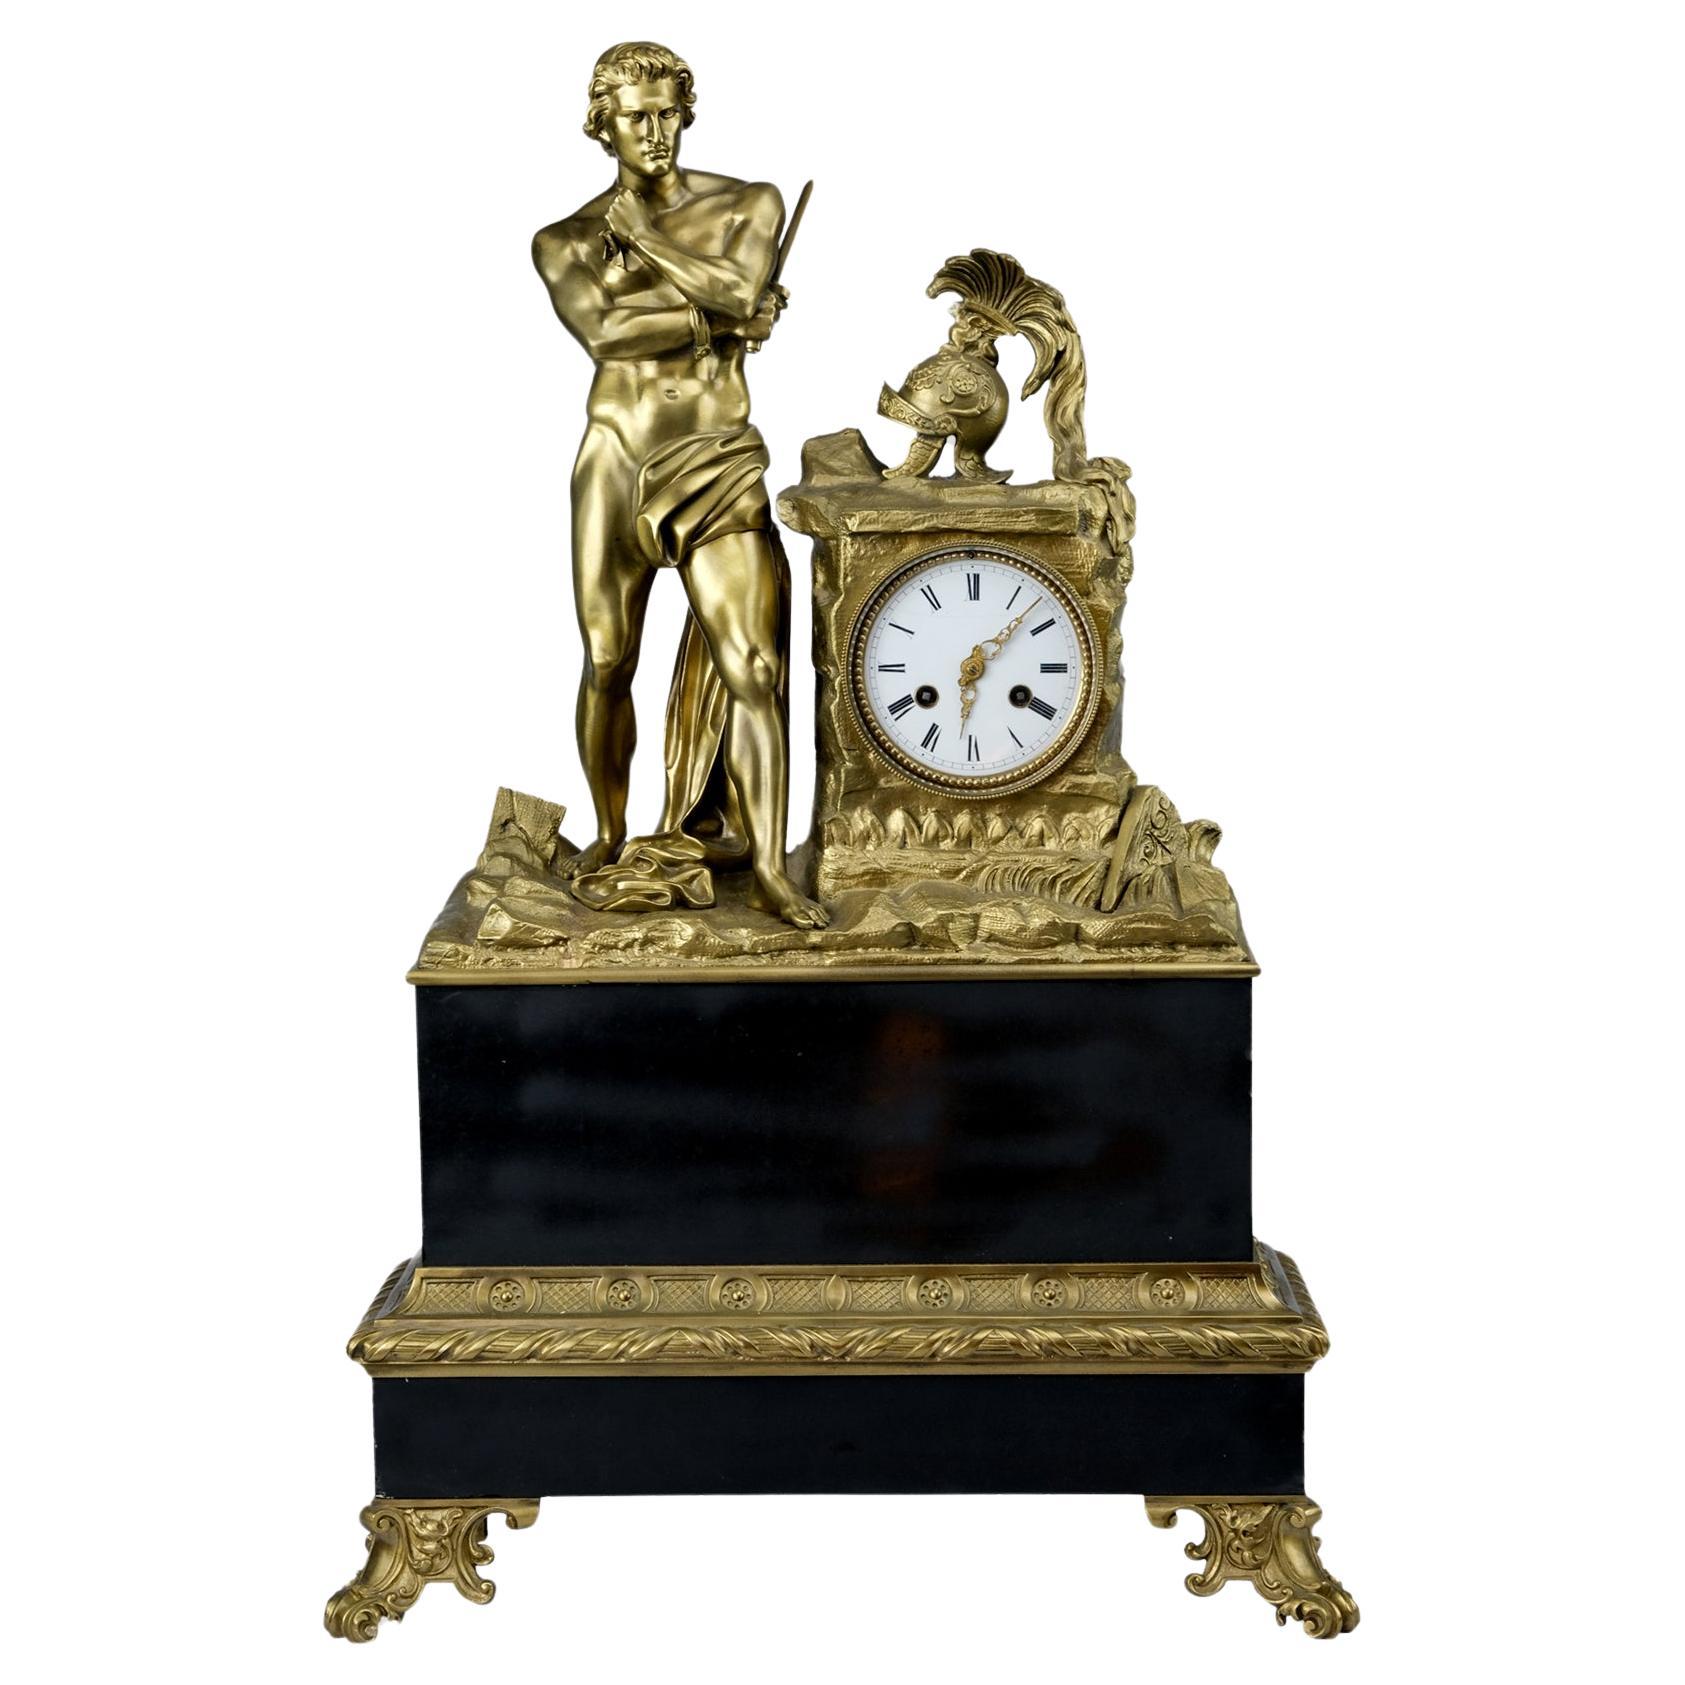 Horloge monumentale en bronze doré représentant Spartacus